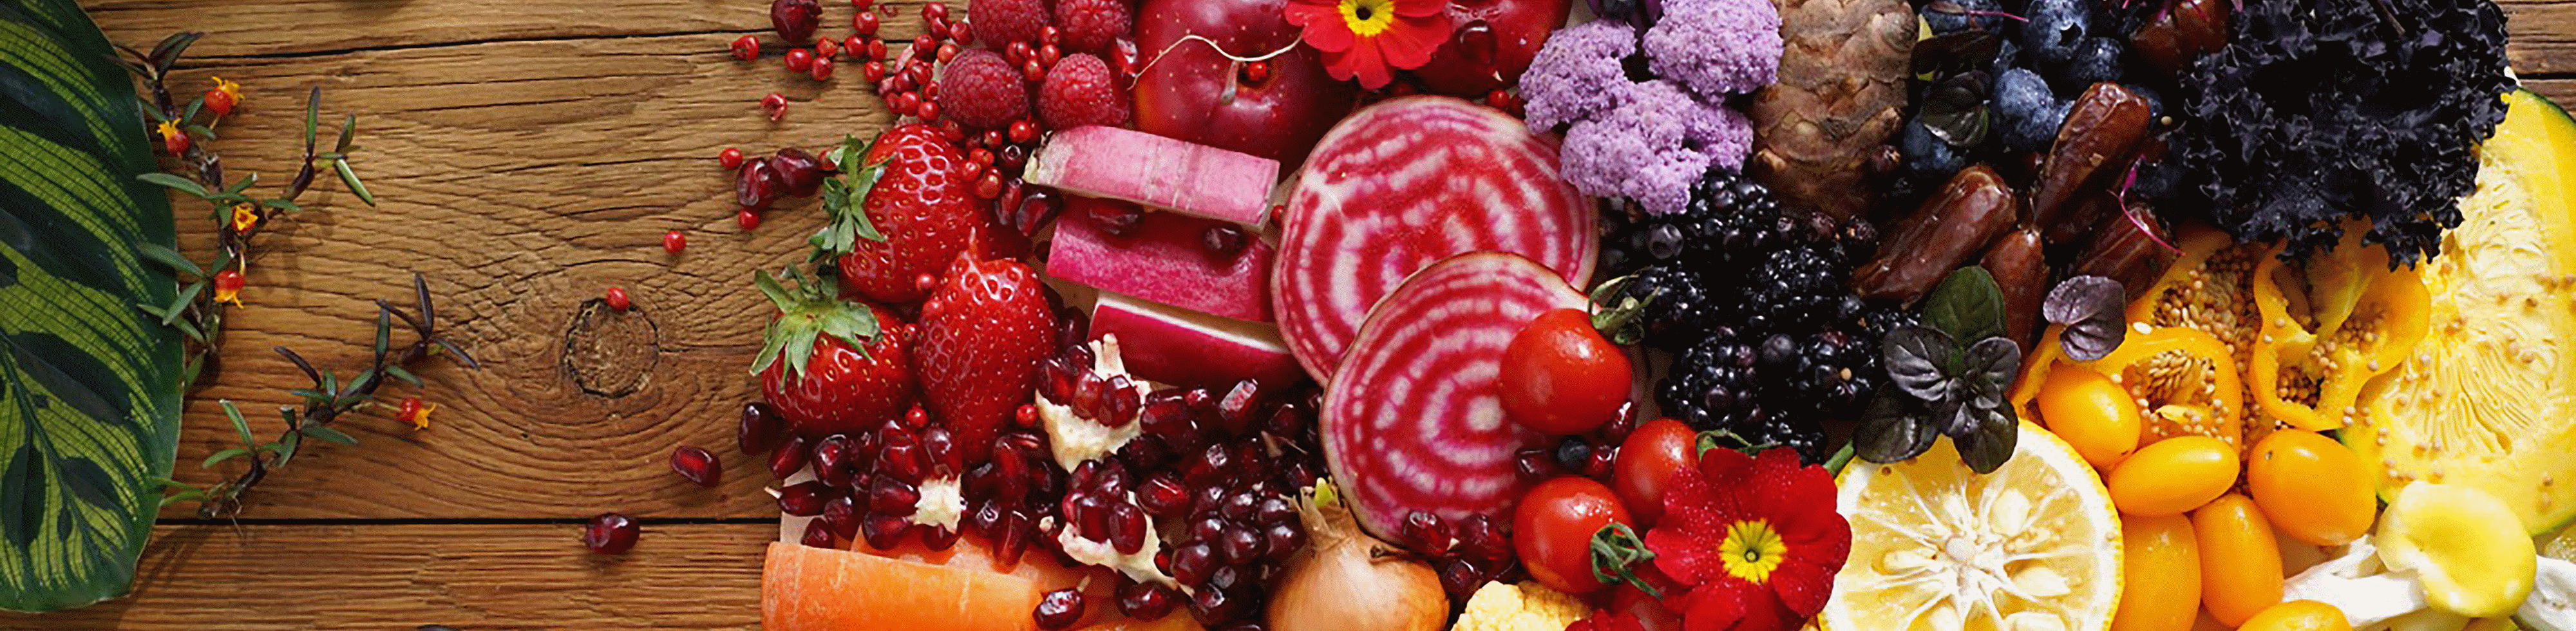 Imagen de frutas y verduras coloridas capturada con este lente con alta resolución en todo el encuadre